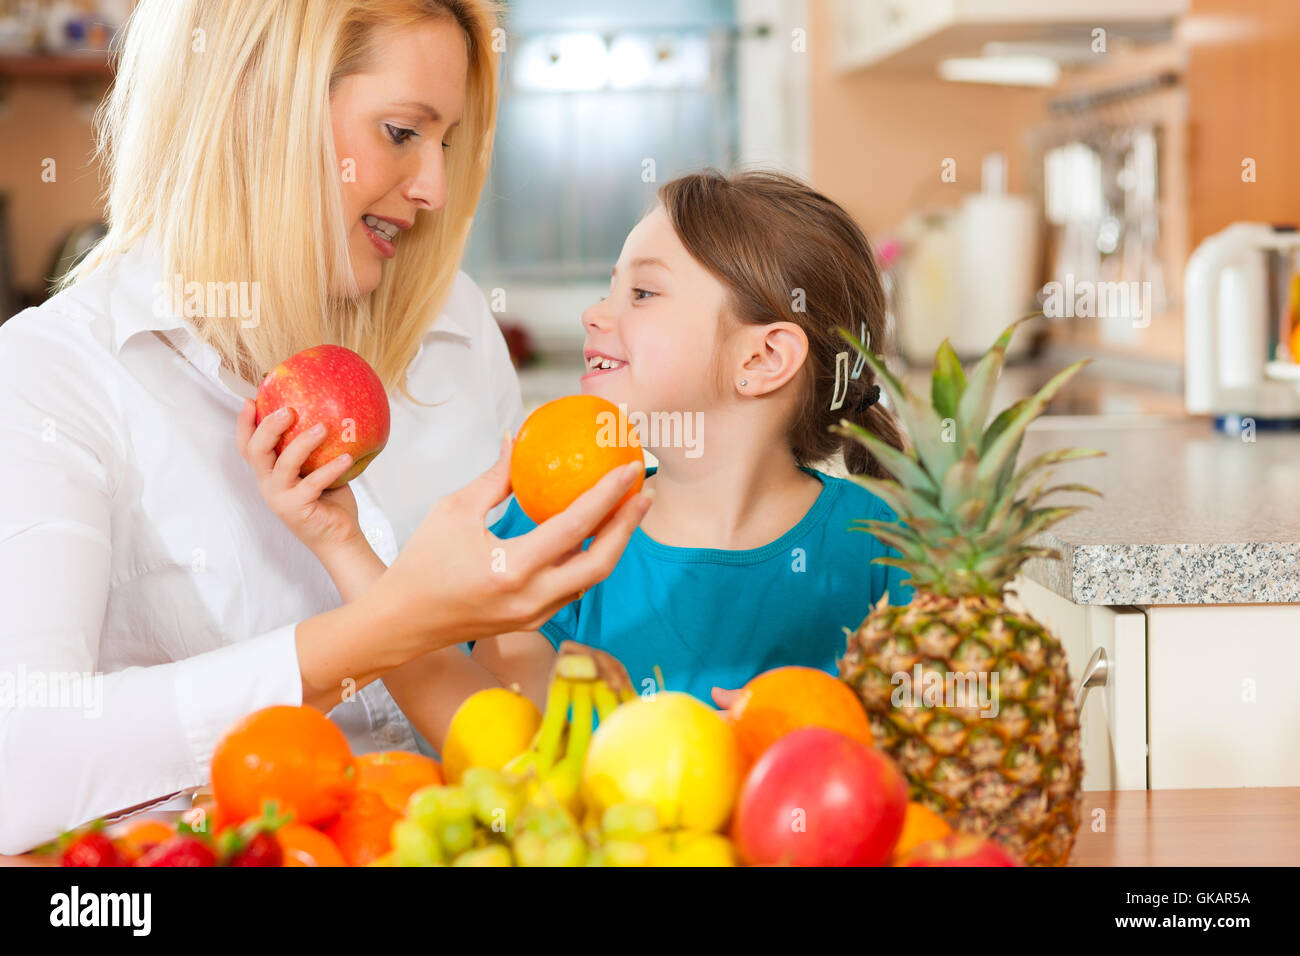 La madre e il bambino con un sacco di frutta Foto Stock